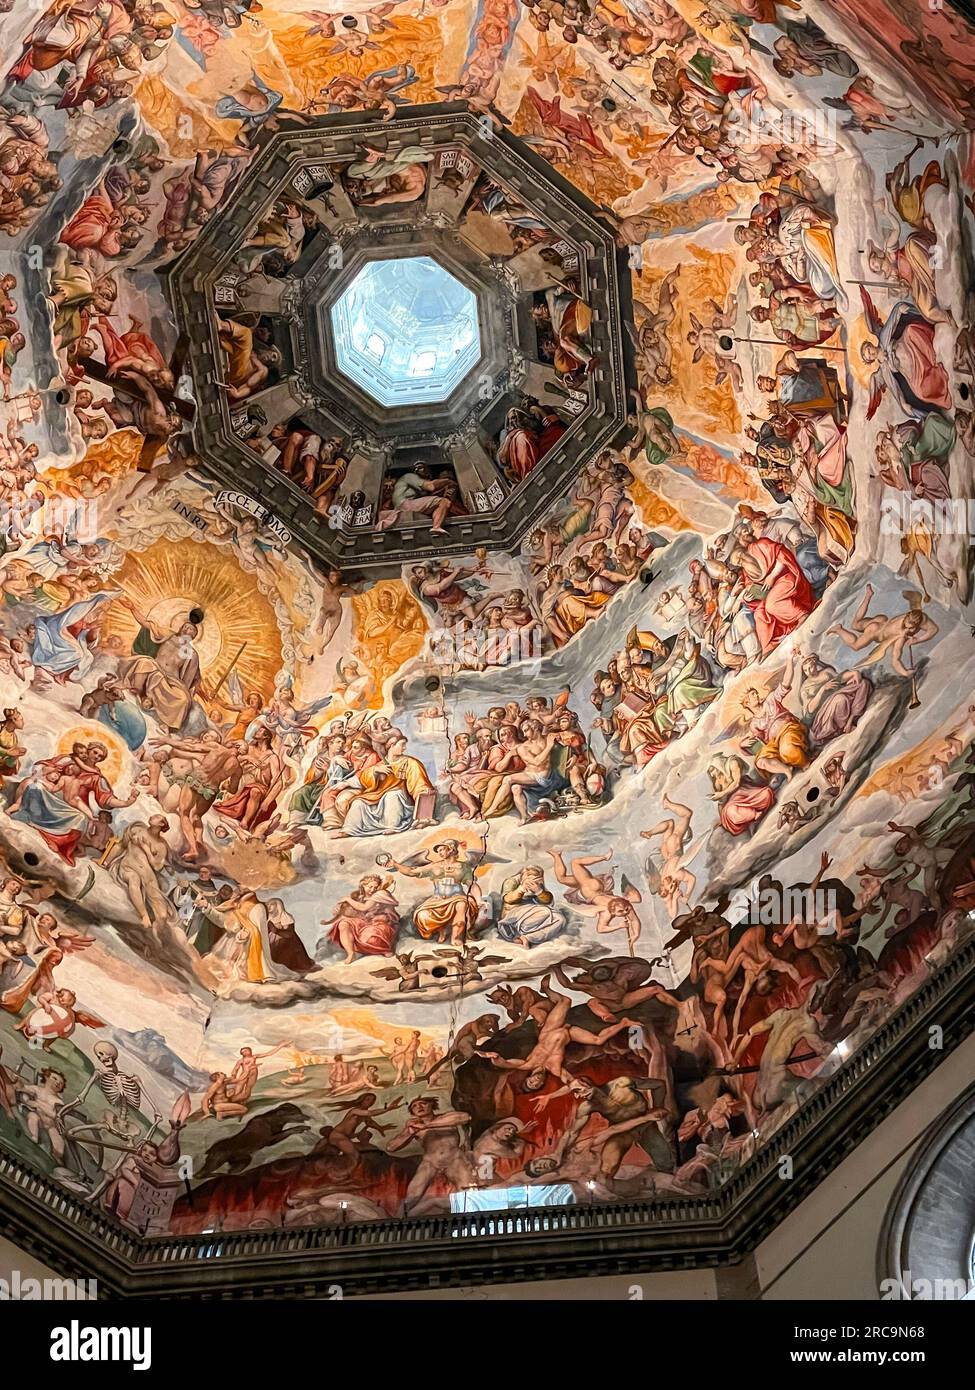 Firenze, Italia - 6 aprile 2022: Dettaglio interno dal Duomo di Firenze, Cattedrale di Santa Maria del Fiore a Firenze. L'edificio era Foto Stock